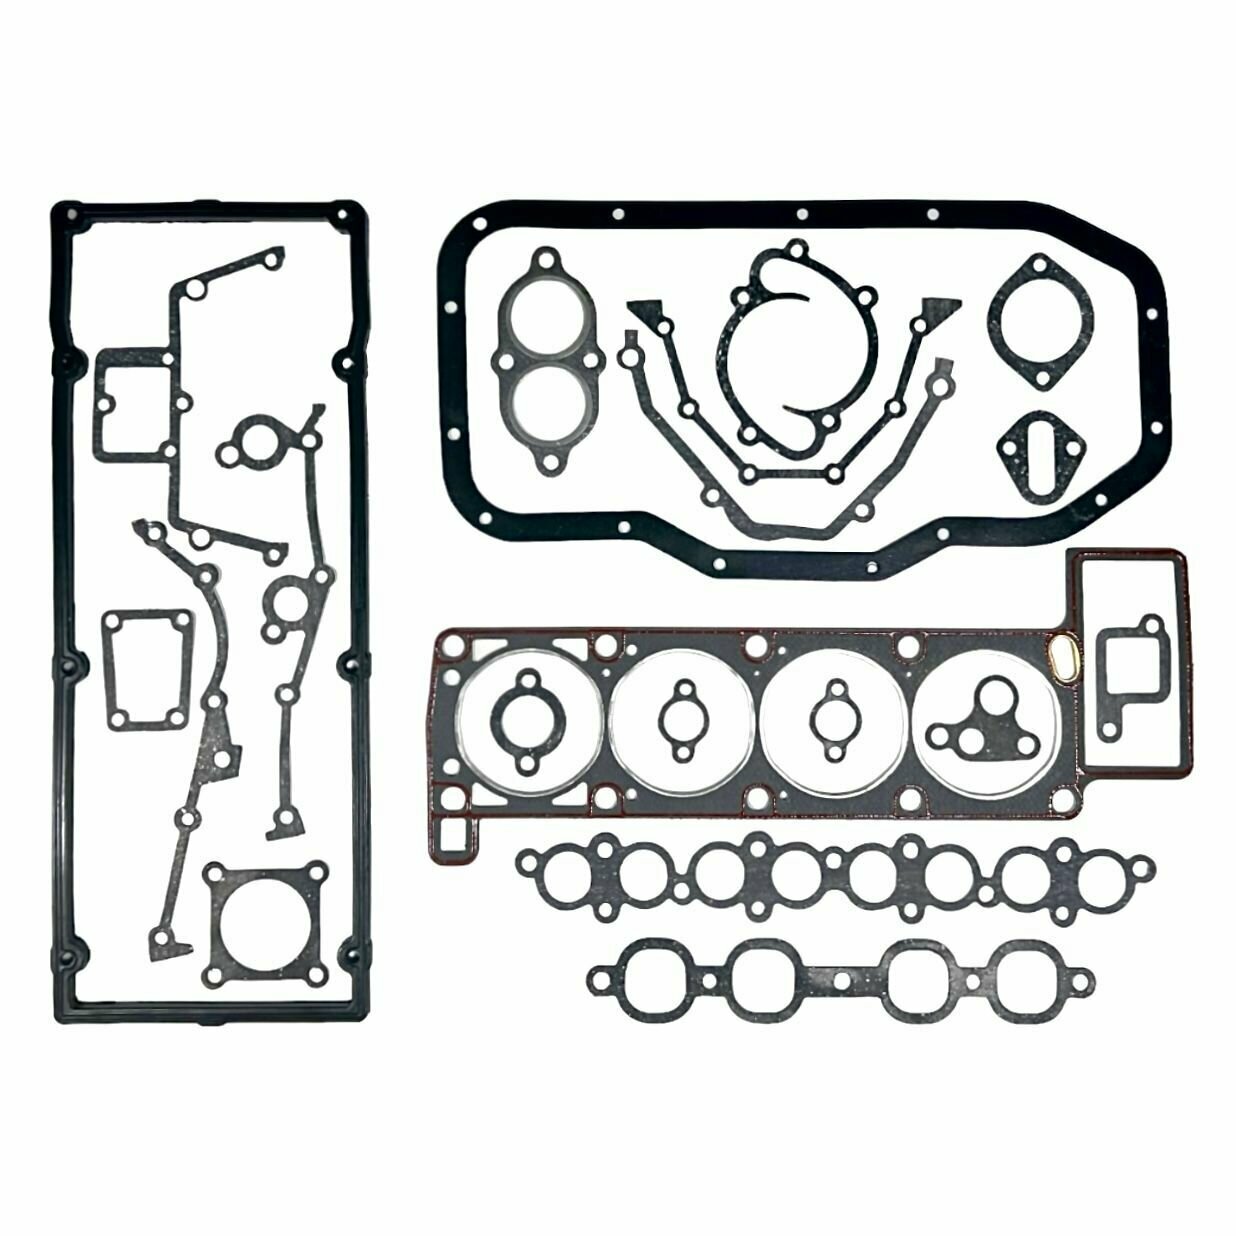 Комплект прокладок двигателя Волга-Газель ЗМЗ-405 (пгбц с герметиком) полный (21 наименование)